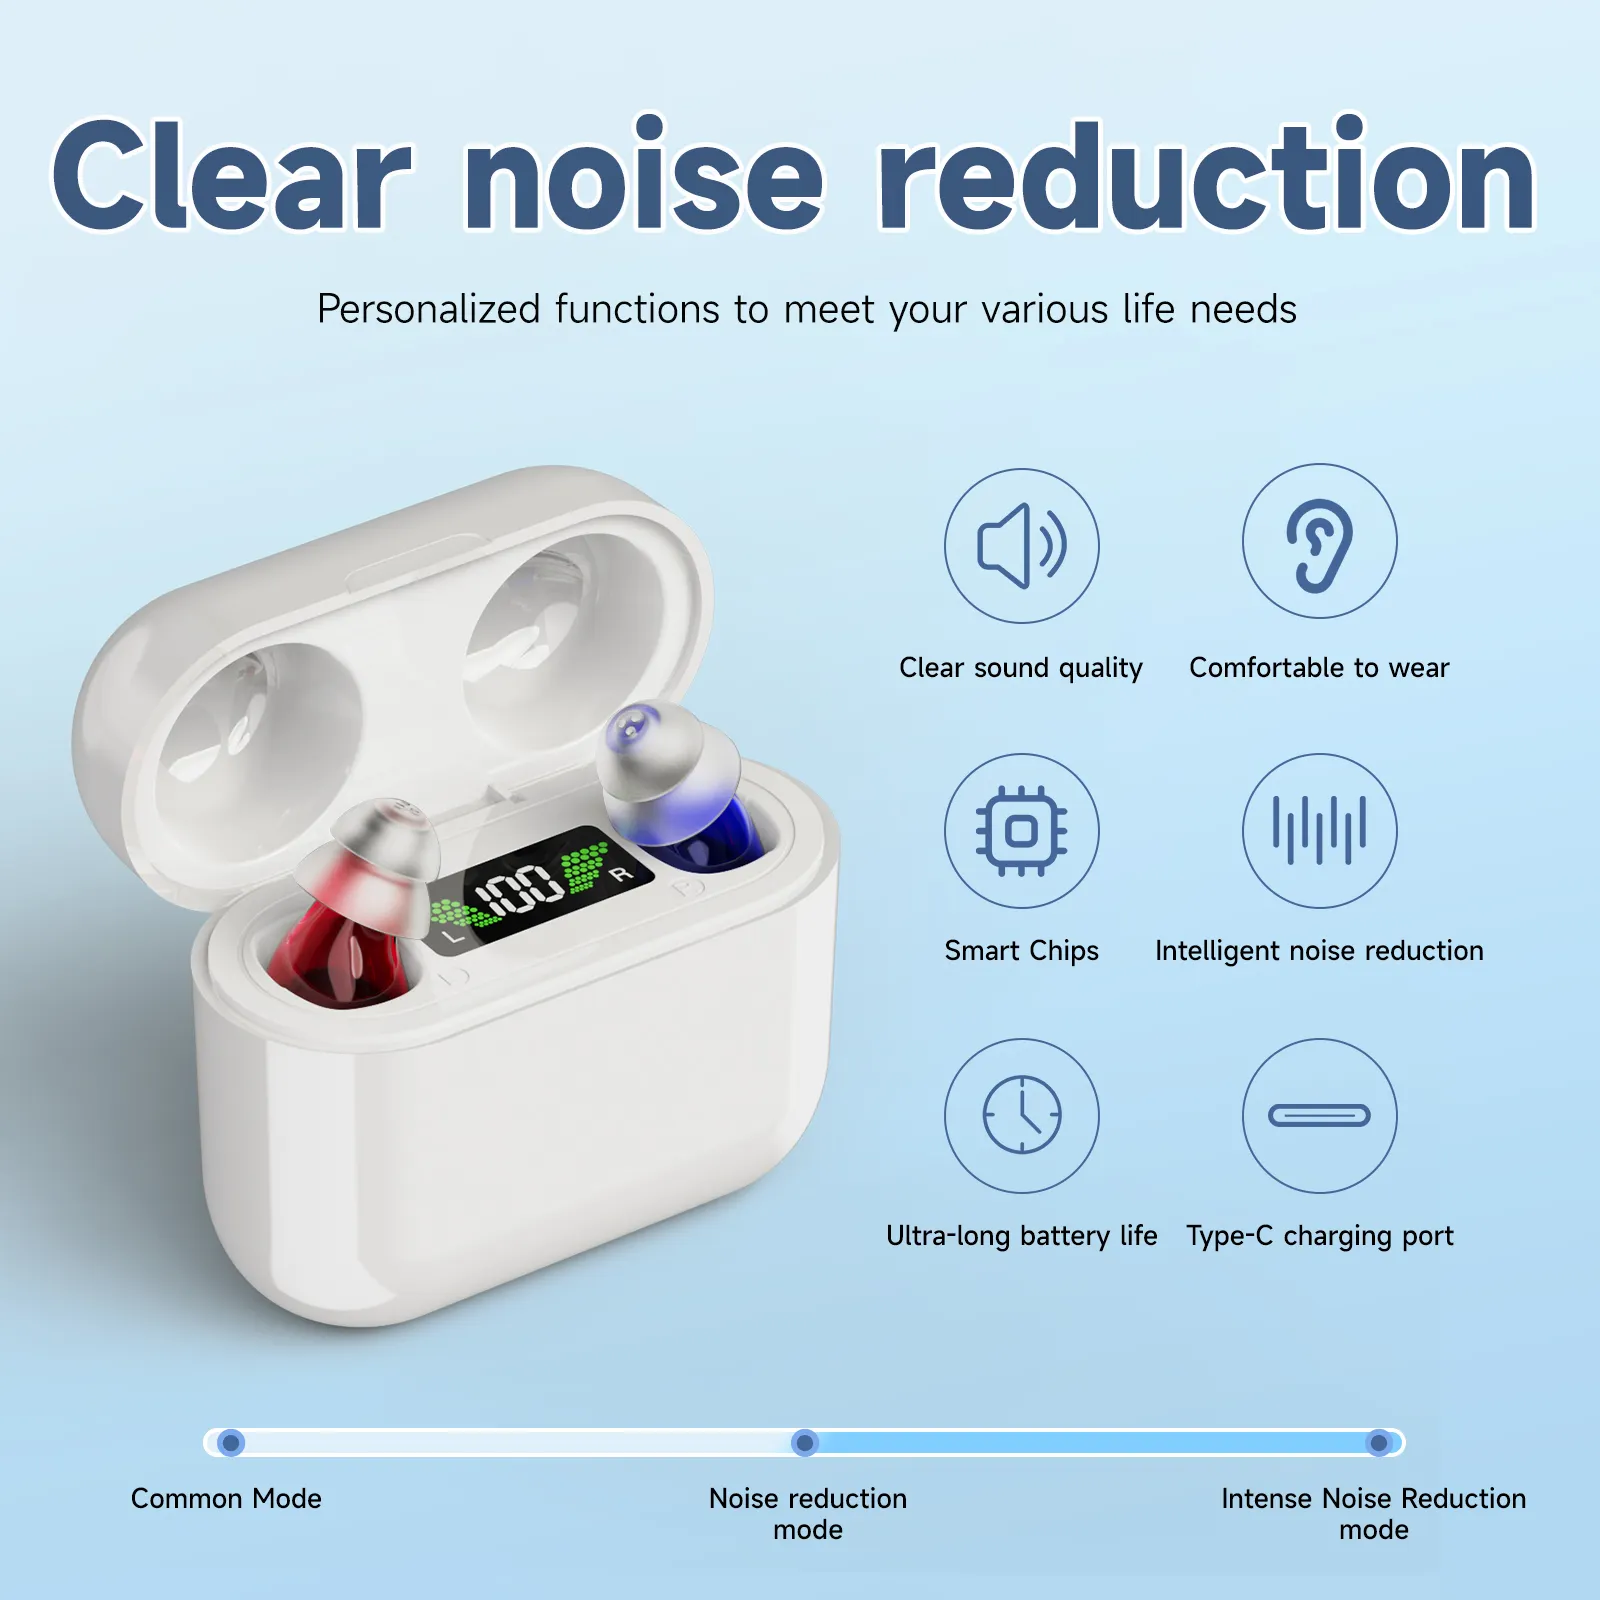 أدوات المساعدة على تقوية السمع غير المرئية جهاز مساعدة على تقوية السمع قابل لإعادة الشحن أجهزة سماعات أذن للأشخاص الذين يعانون من السقوط منتجات السمع والأذن غير المشفرة